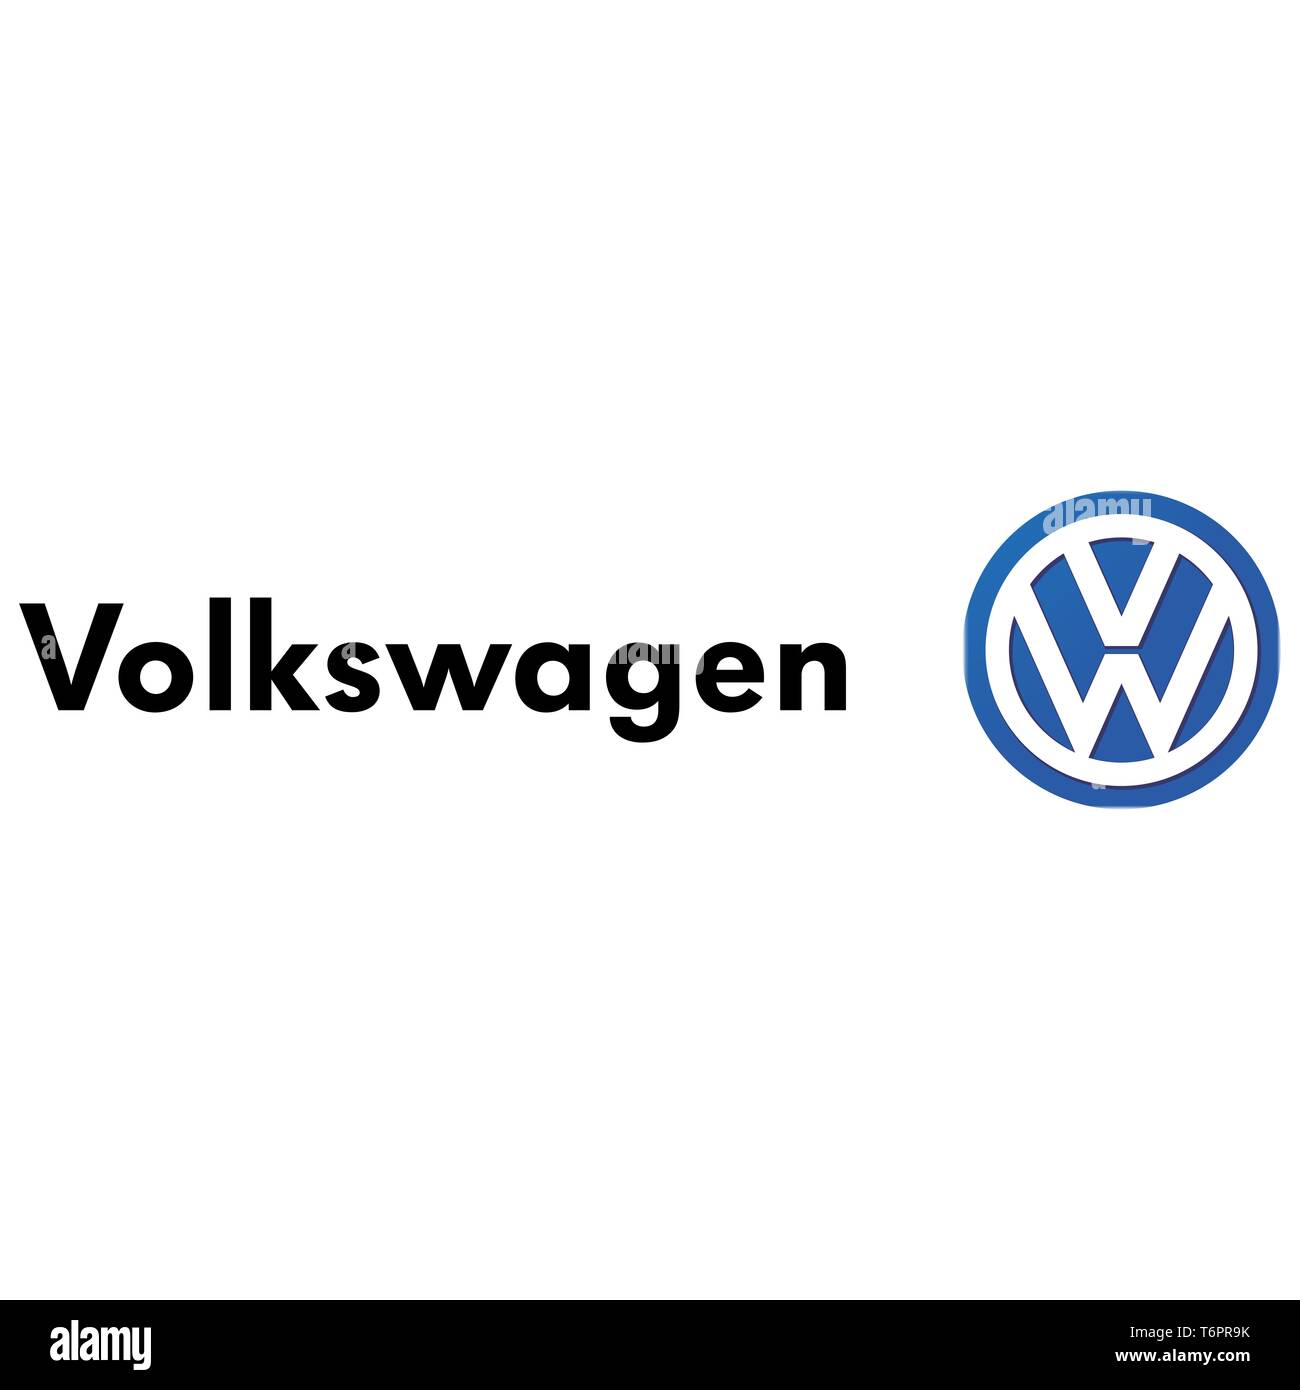 Volkswagen Group значок